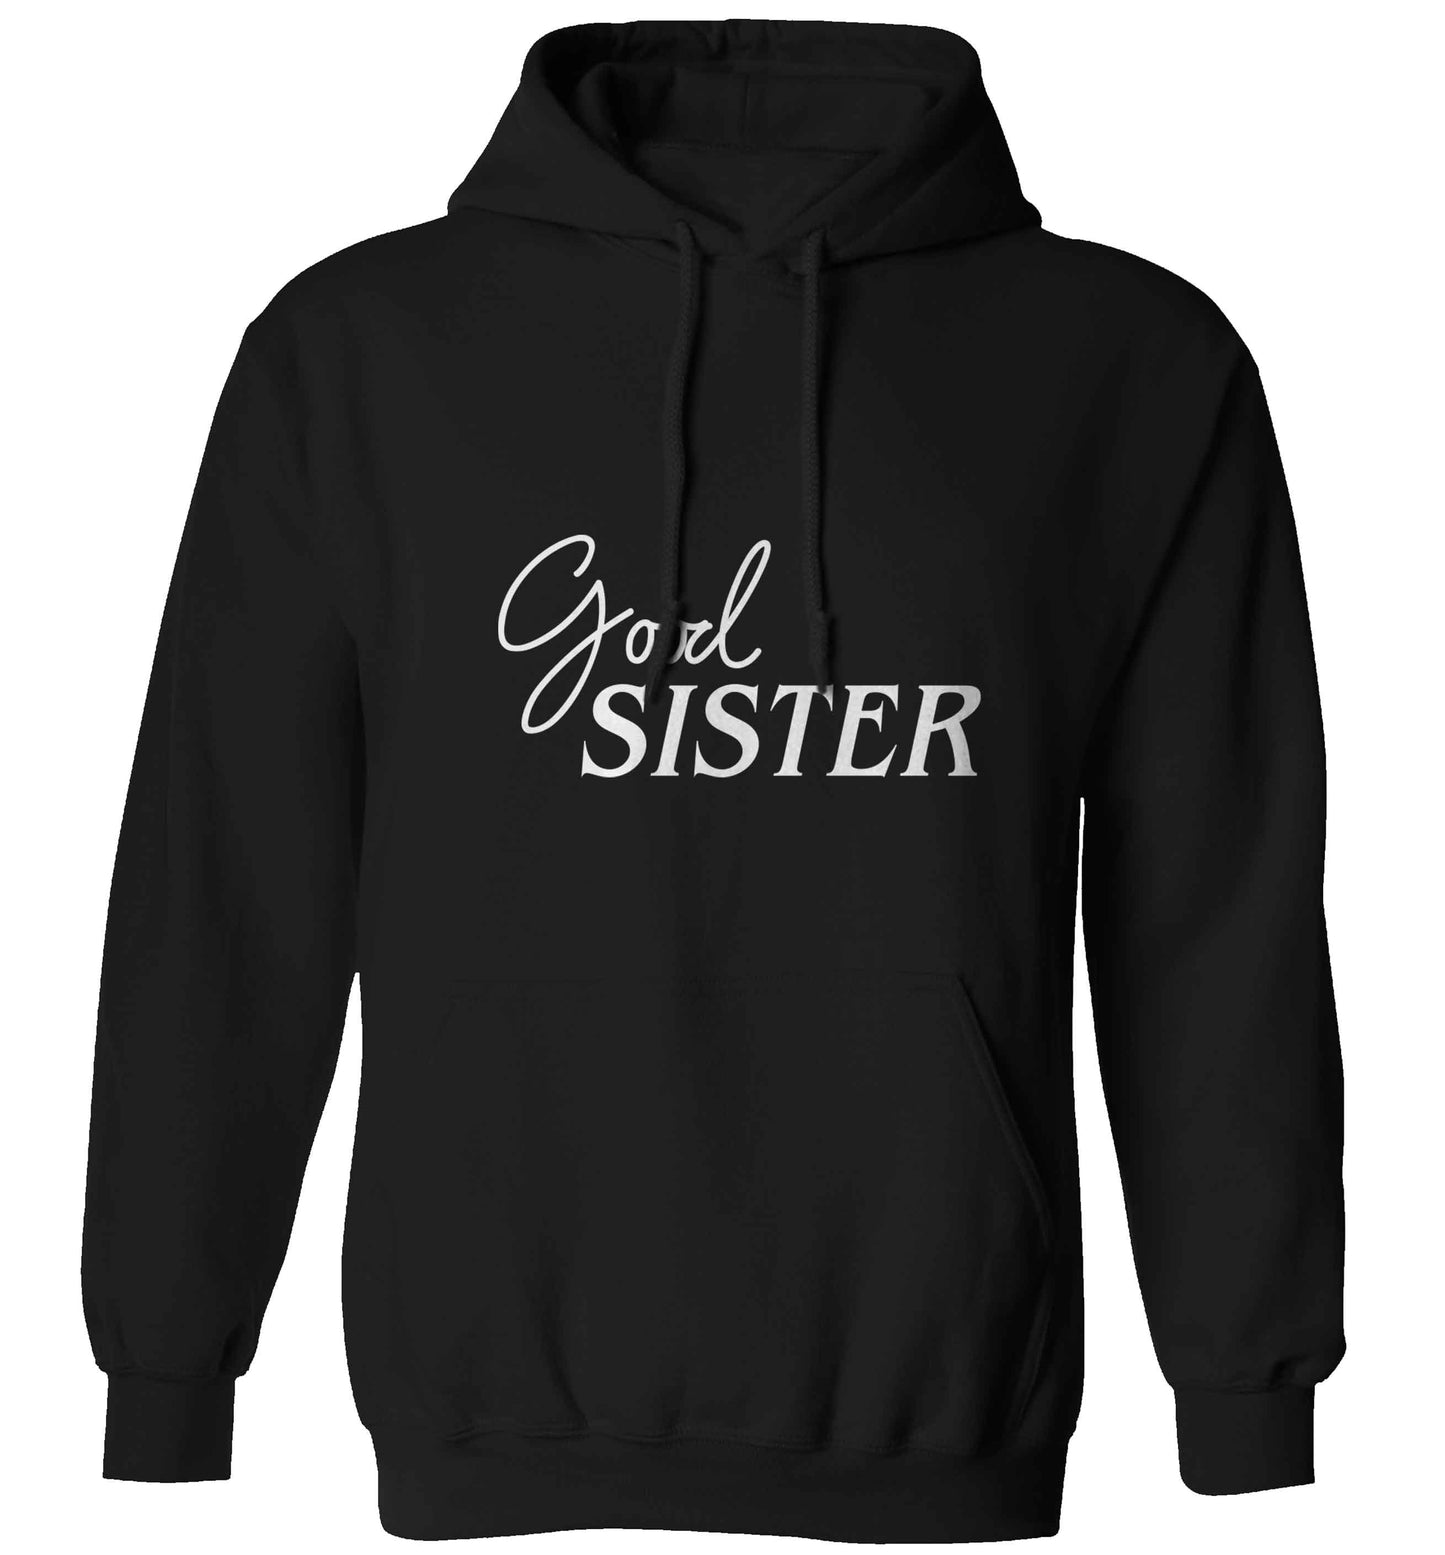 Good sister adults unisex black hoodie 2XL